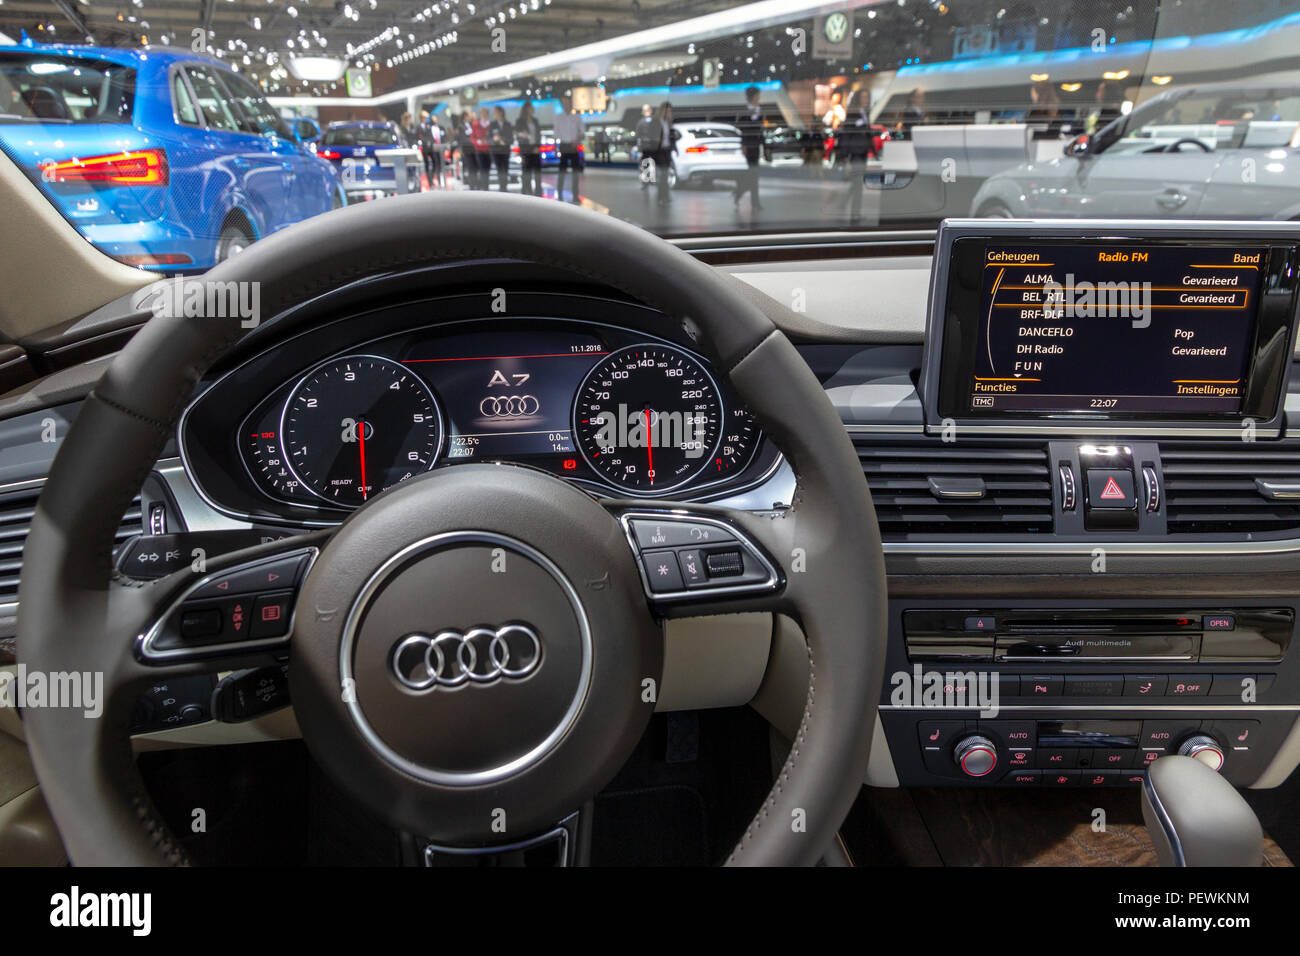 Audi A7 Interior 2019 Audi A7 Review Design Specs